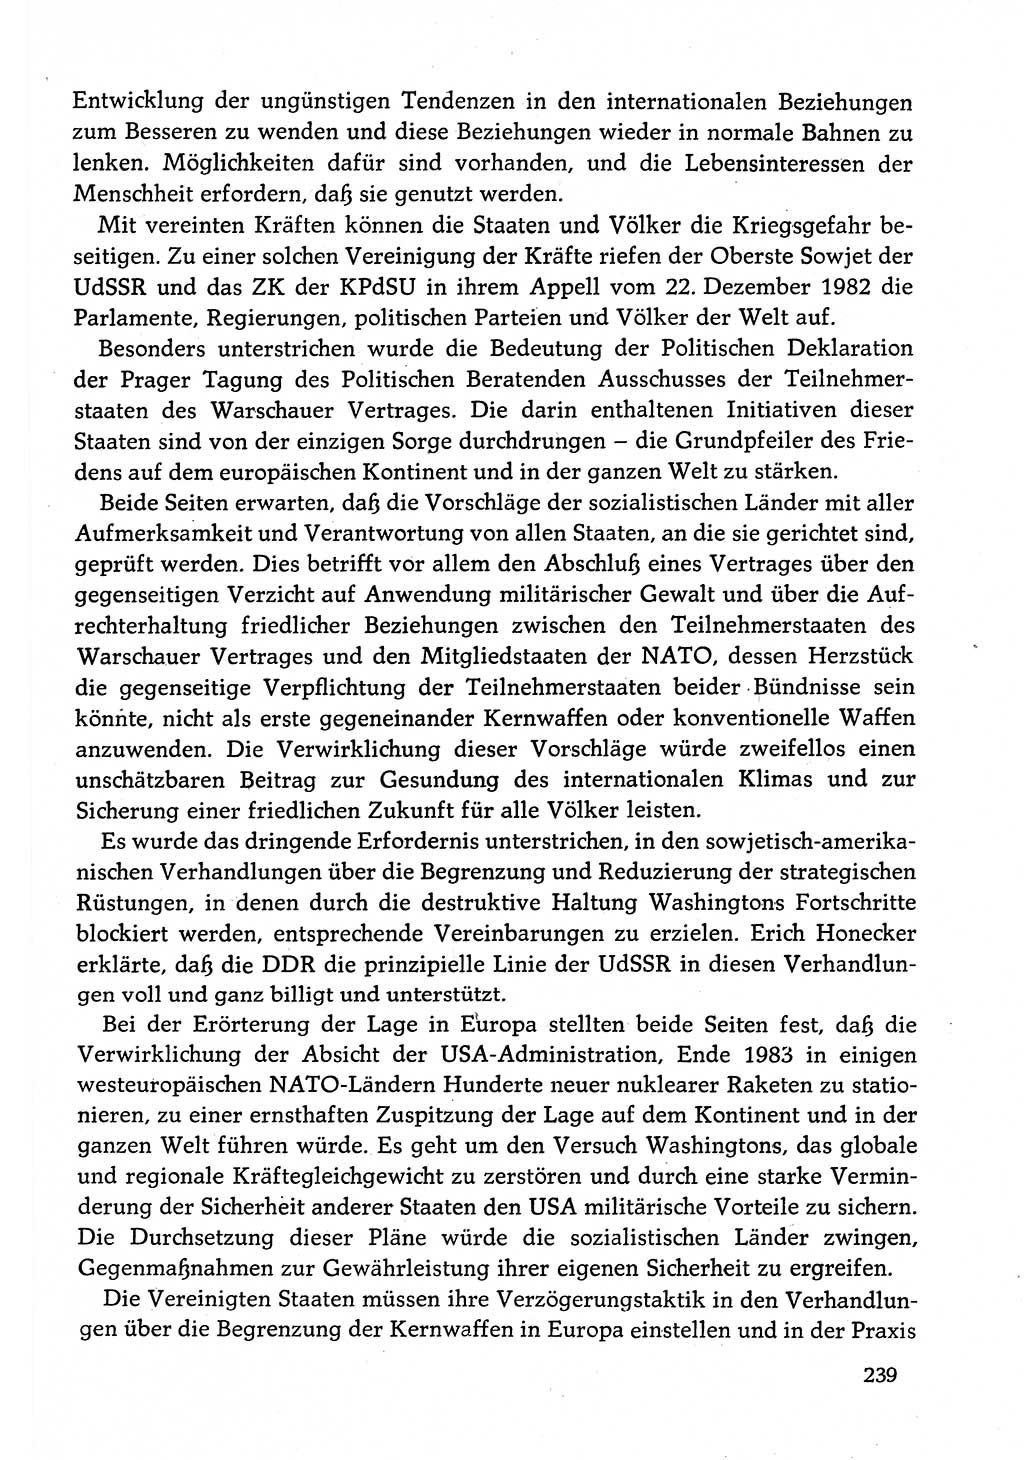 Dokumente der Sozialistischen Einheitspartei Deutschlands (SED) [Deutsche Demokratische Republik (DDR)] 1982-1983, Seite 239 (Dok. SED DDR 1982-1983, S. 239)